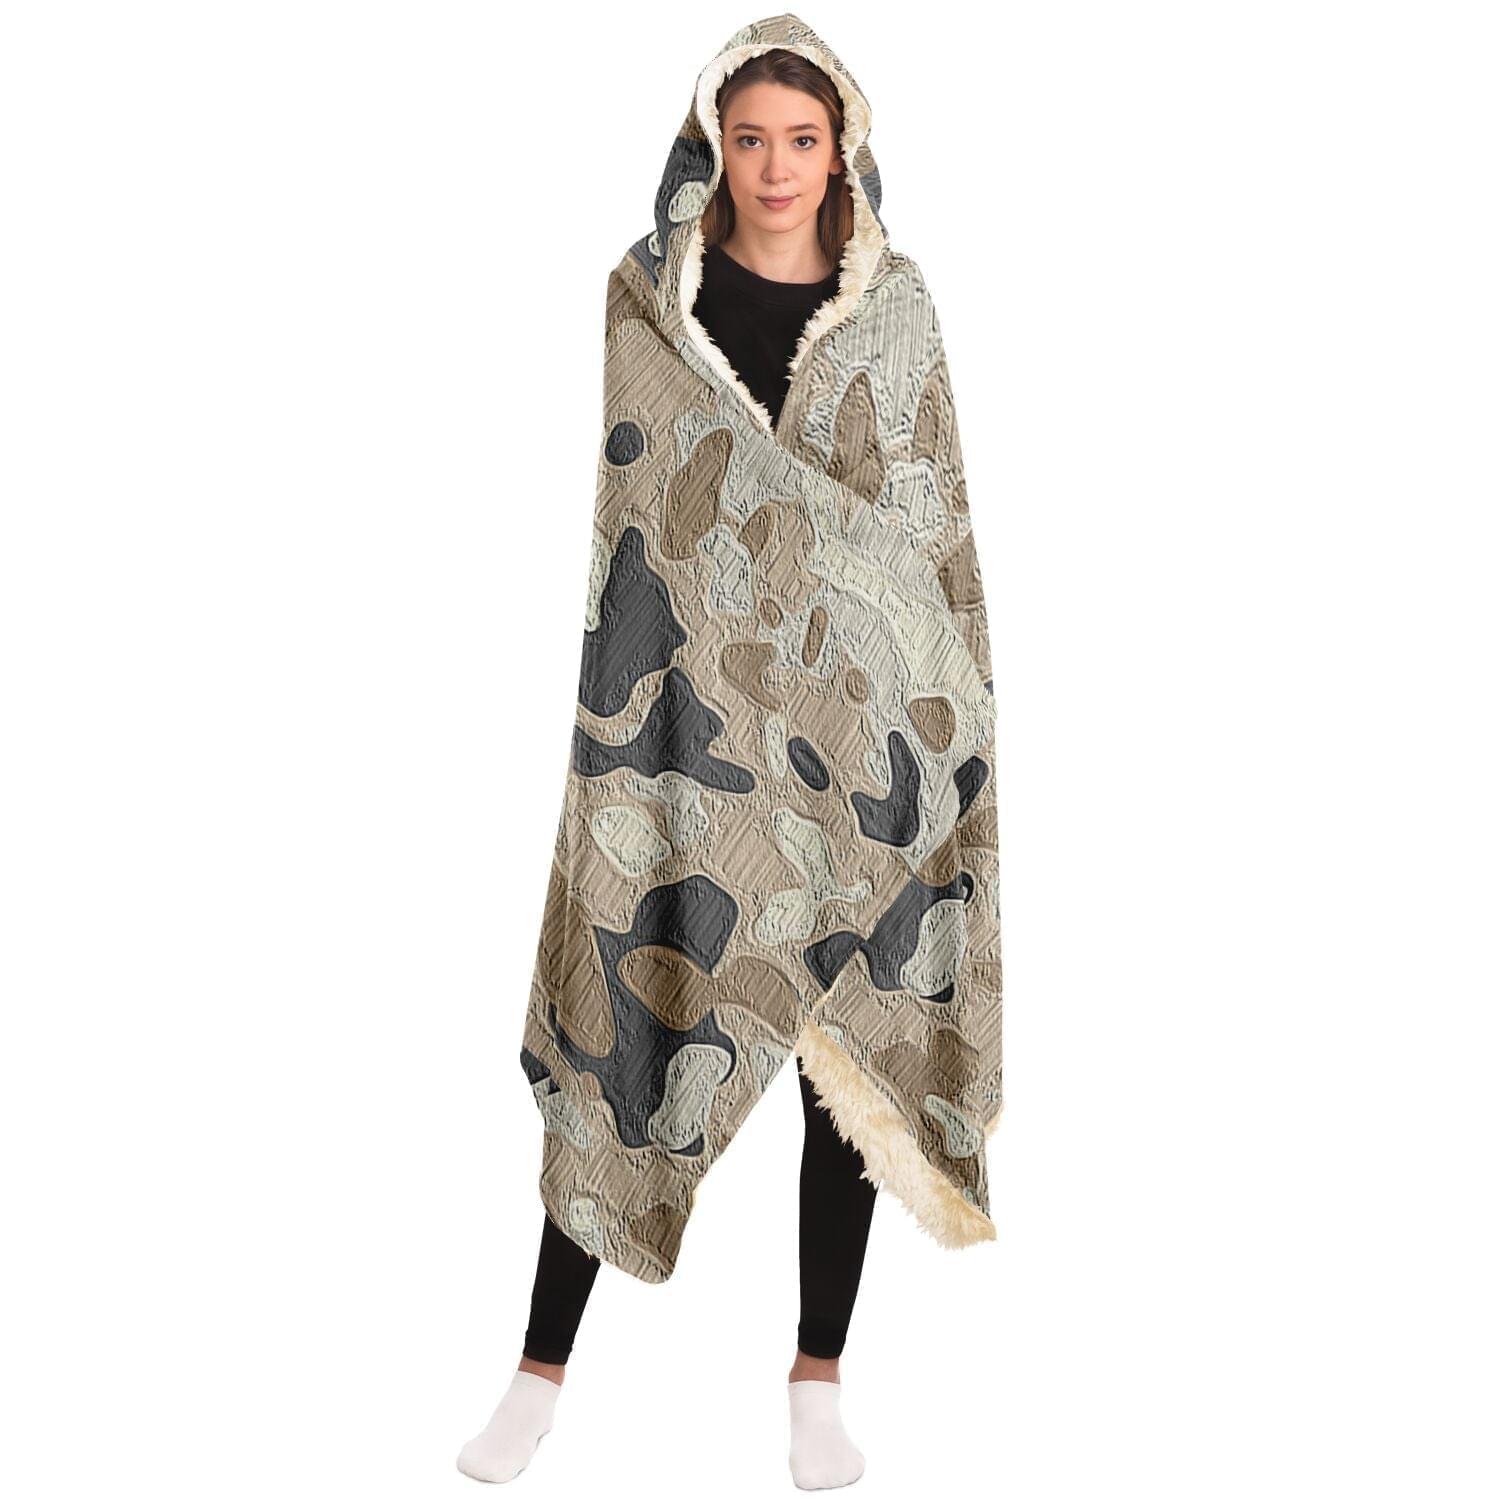 Camouflage Beige Hooded Blanket for camping HOO-DESIGN.SHOP